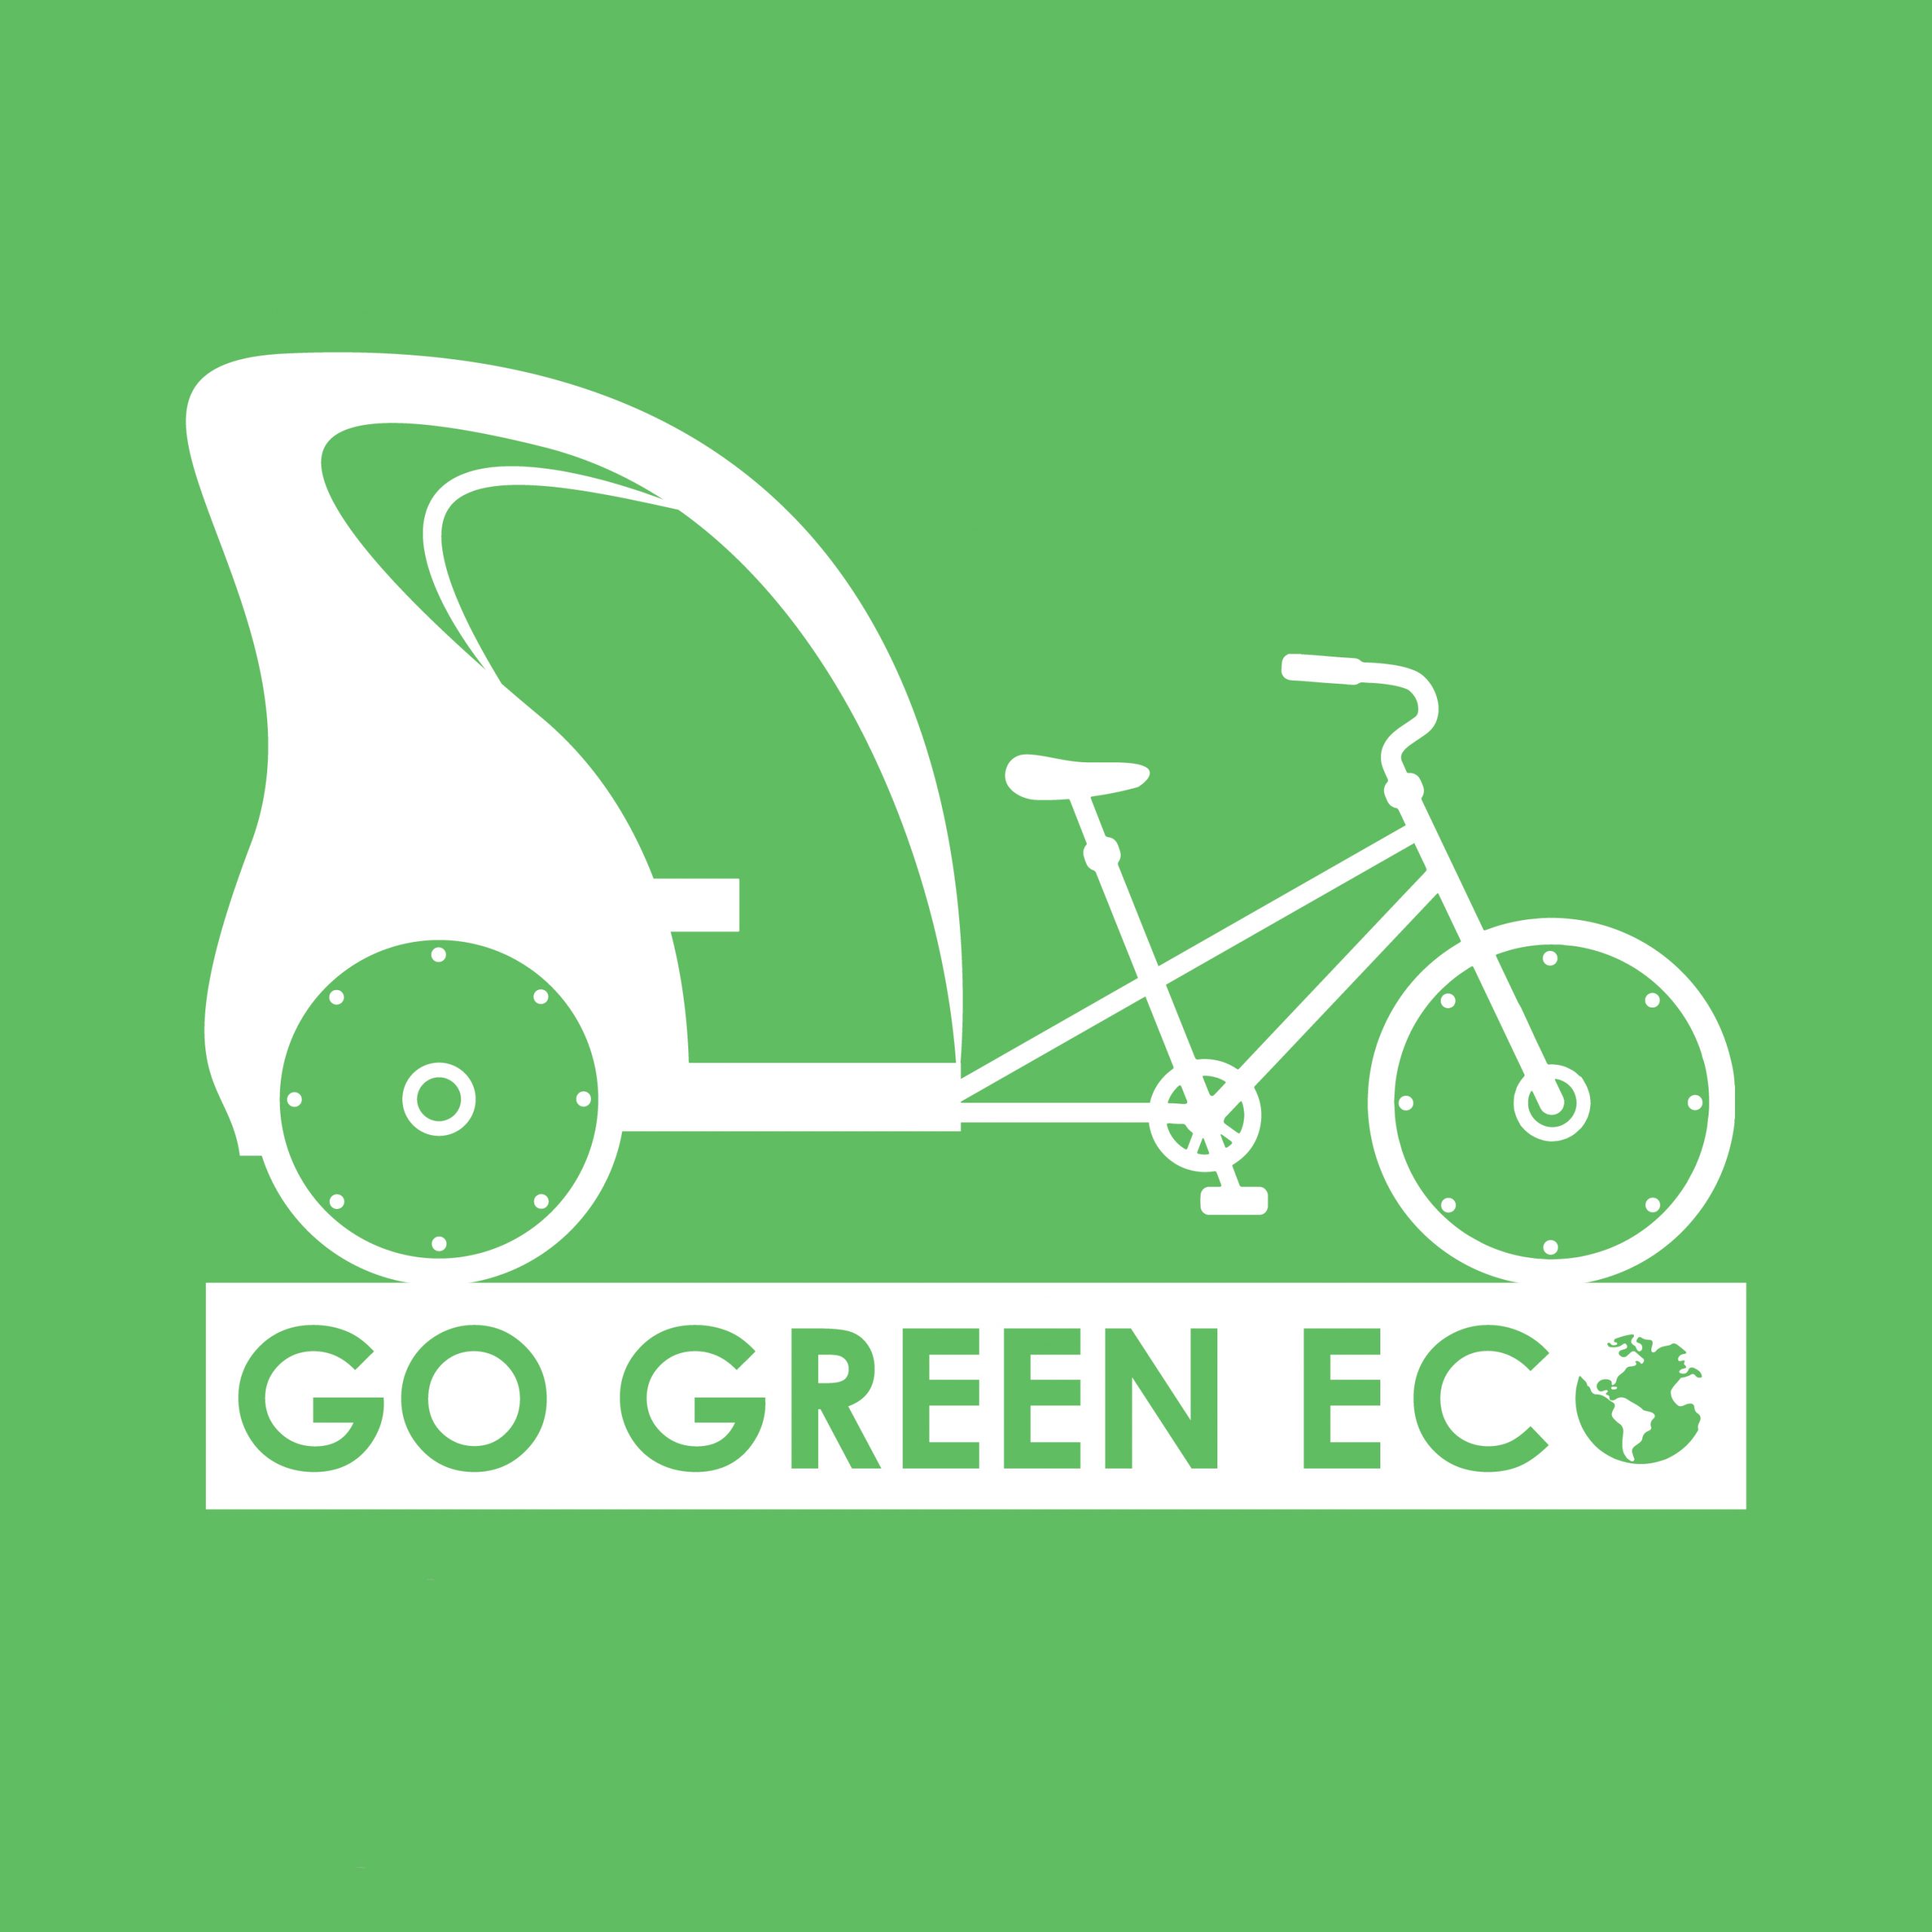 Go Green Eco Logo Design